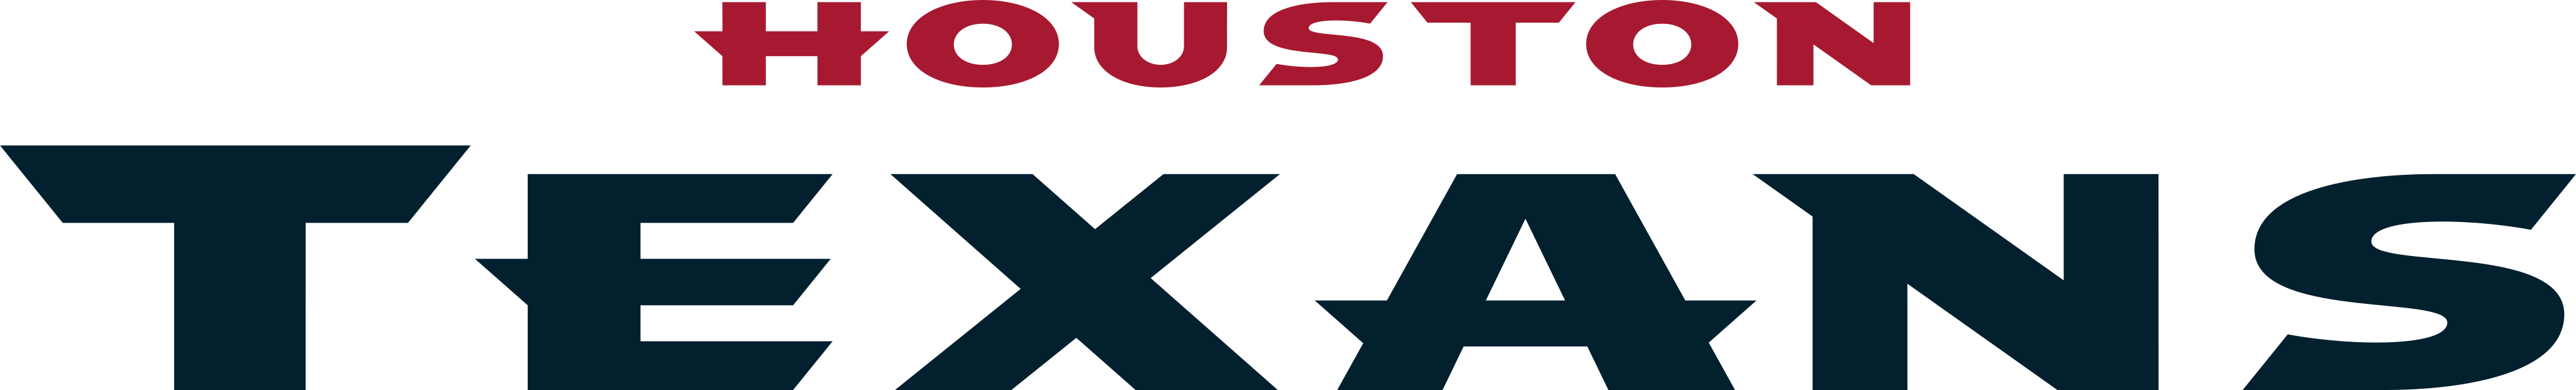 houston texans logo 1 - Houston Texans Logo